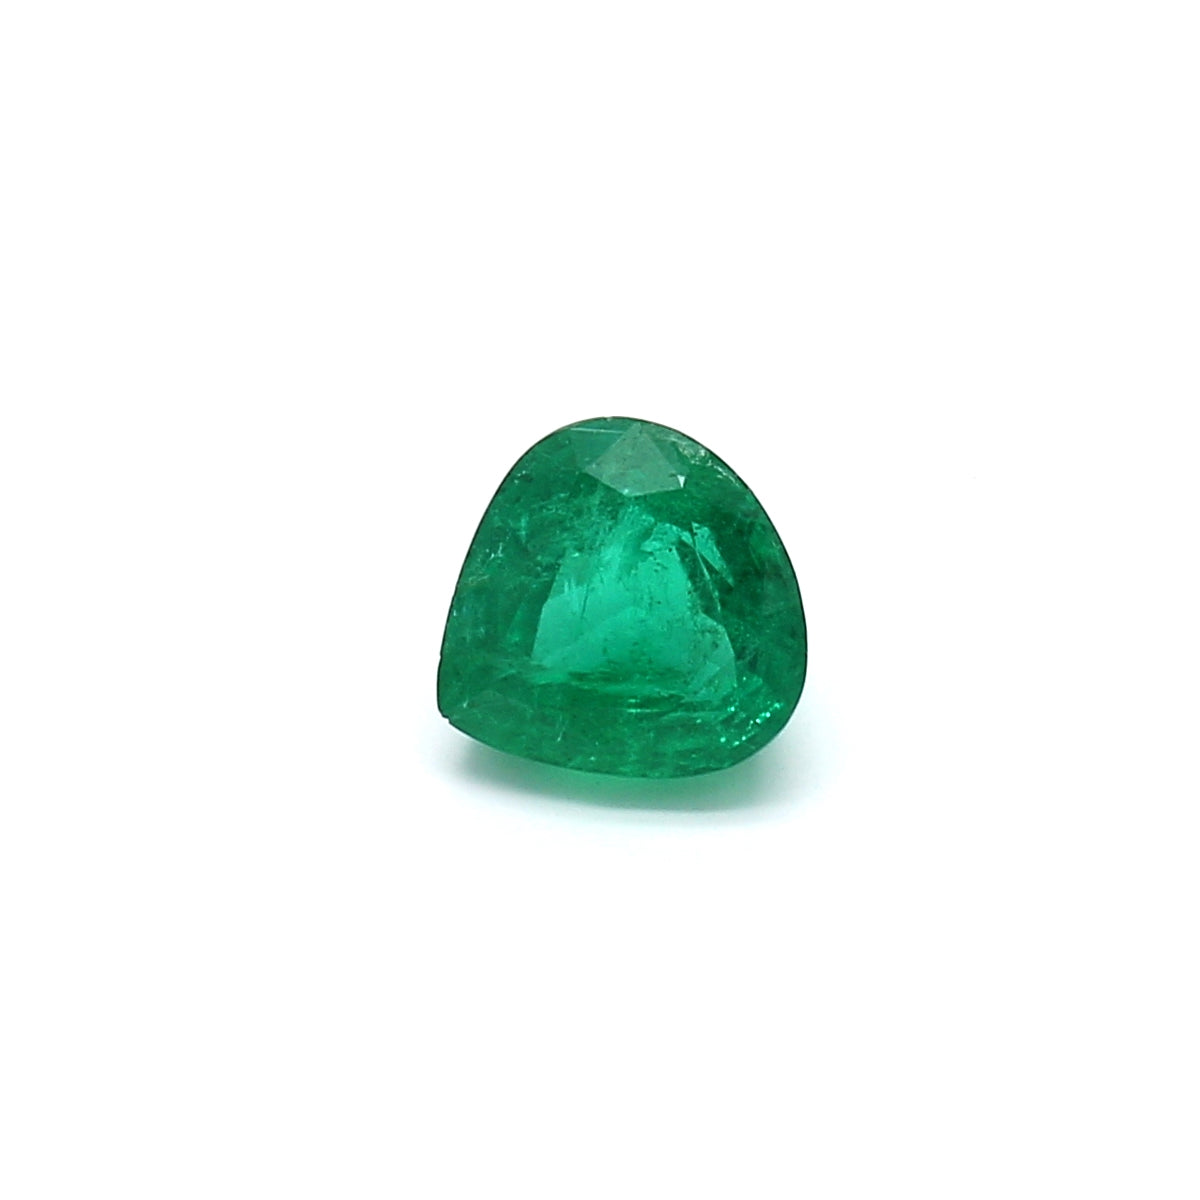 1.13ct Pear Shape Emerald, Minor Oil, Zambia - 6.73 x 6.56 x 4.25mm